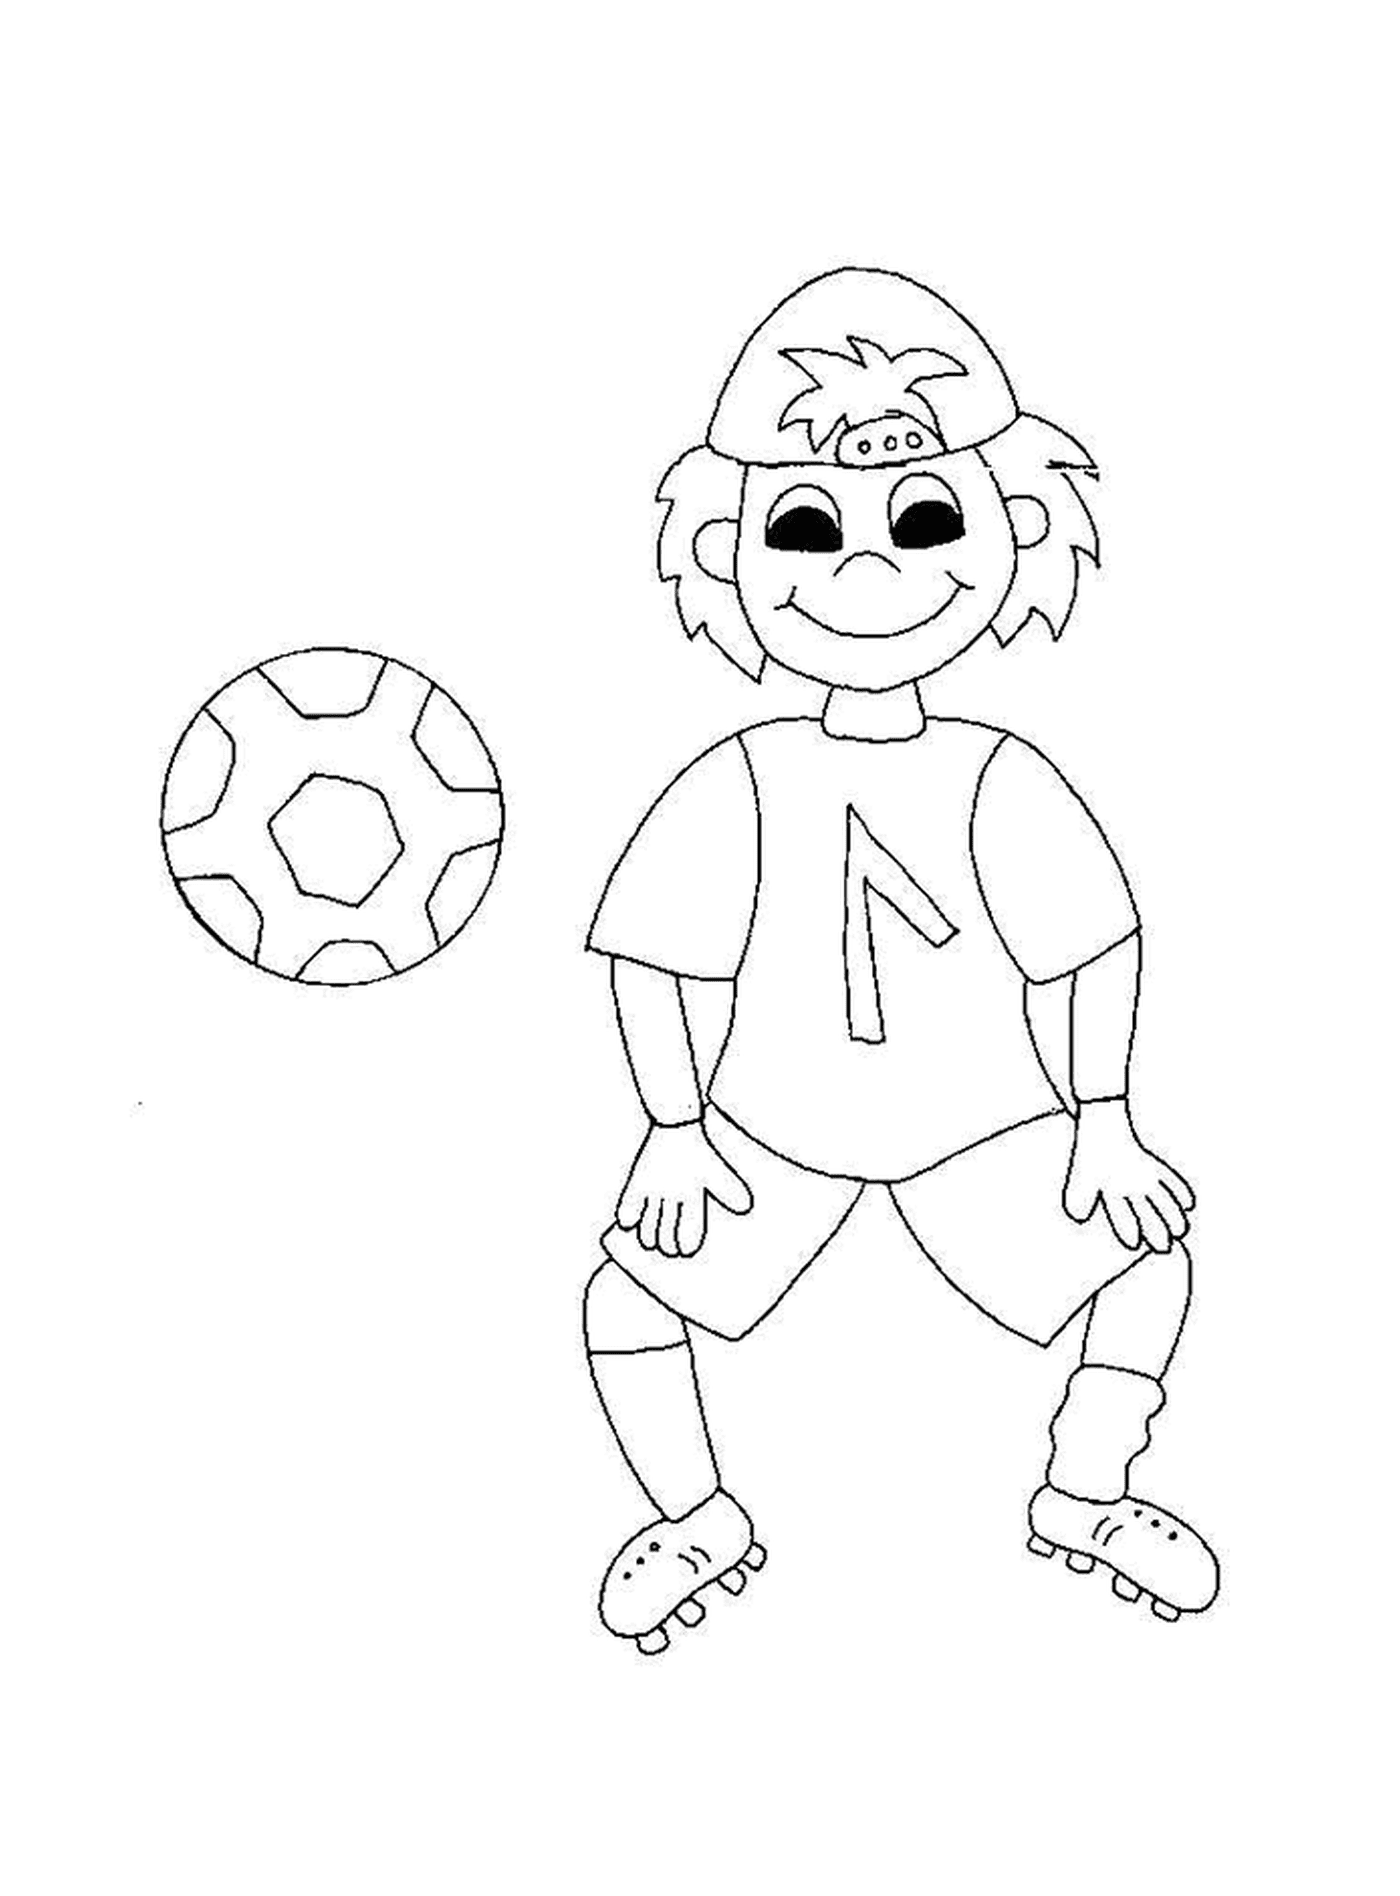   Un enfant souriant joue au foot 